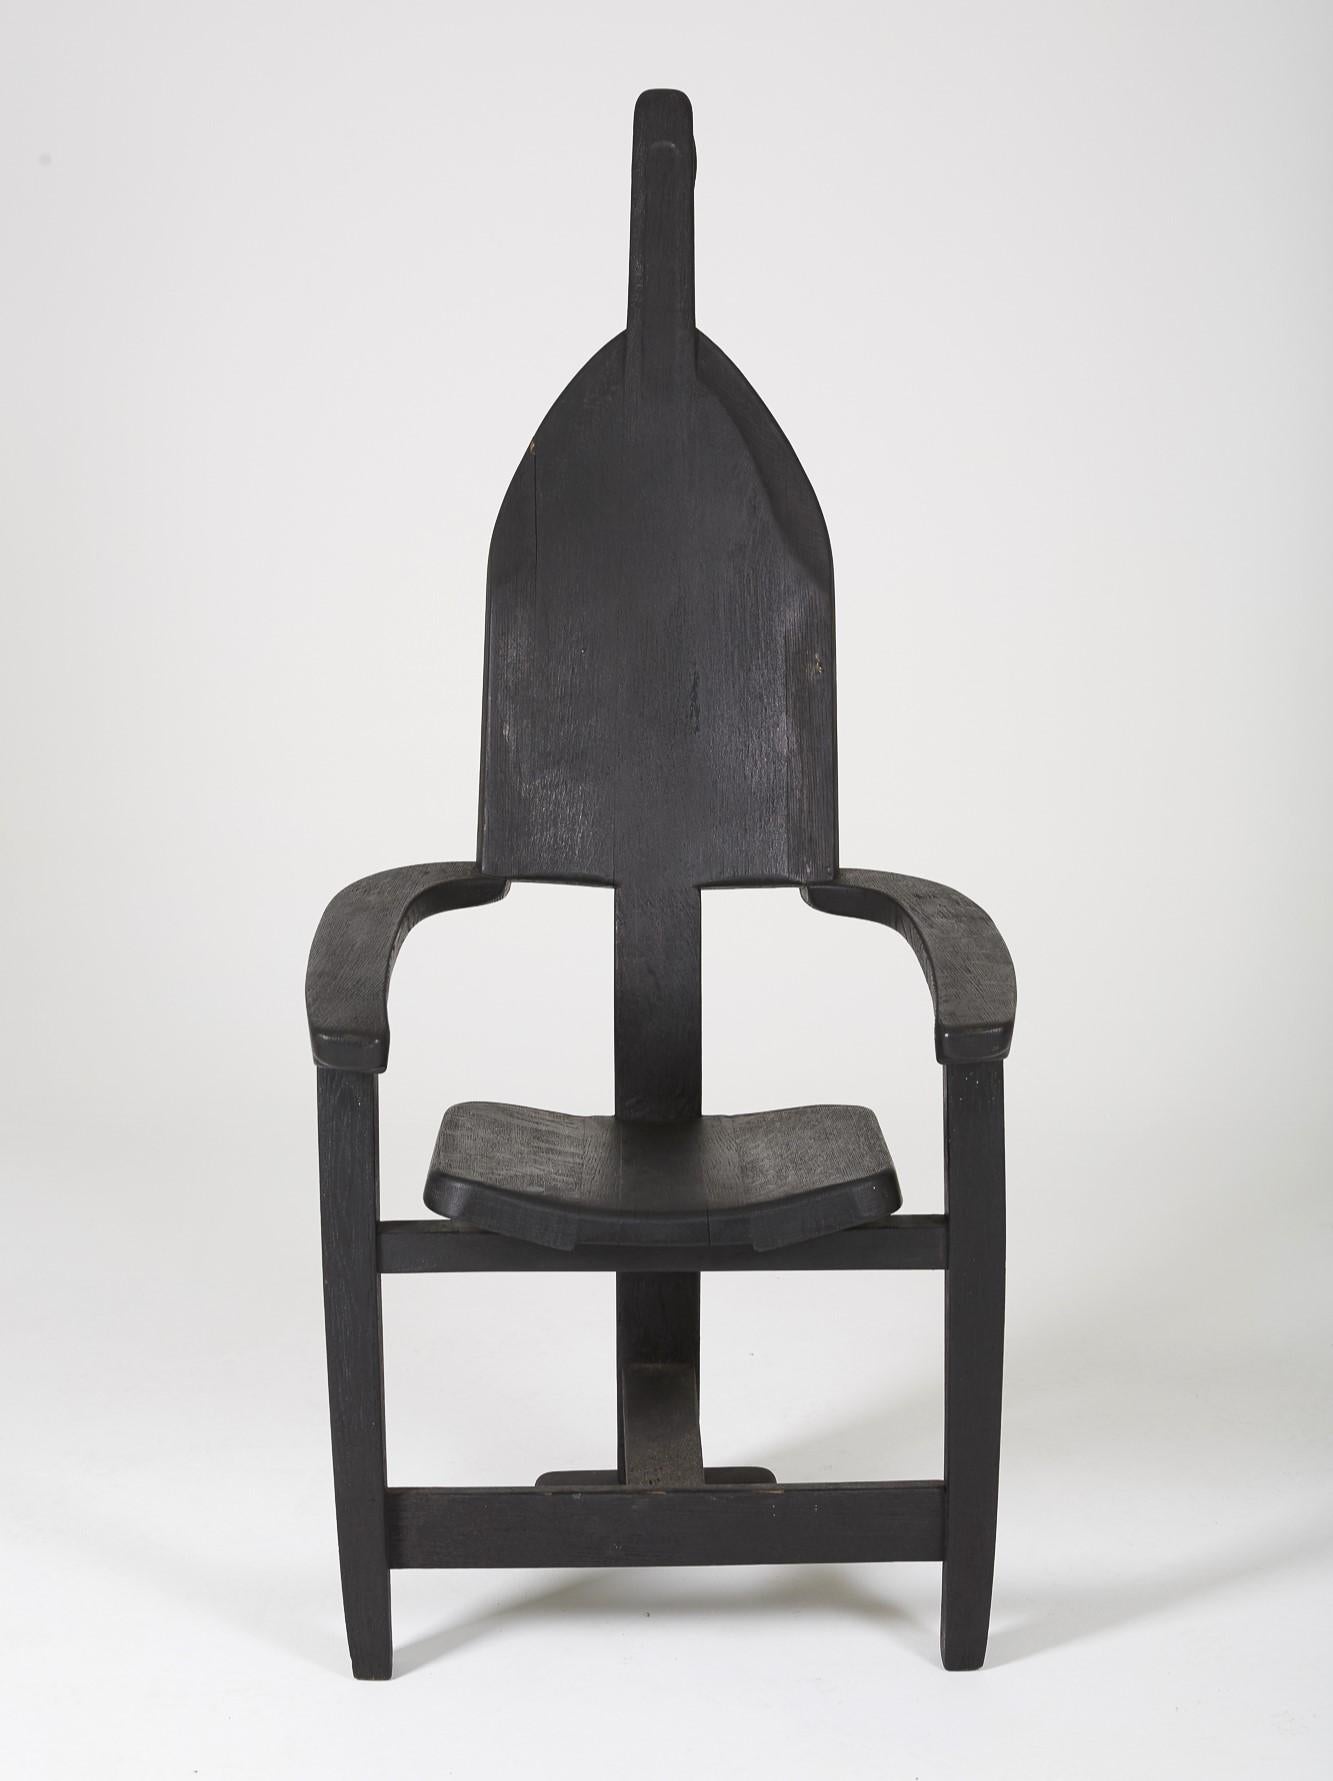 Fauteuil trône en bois massif teinté noir du designer Rudi Muth, 1987. Signé et daté à la main sous le siège. Bon état, légères traces d'usure.
LP394